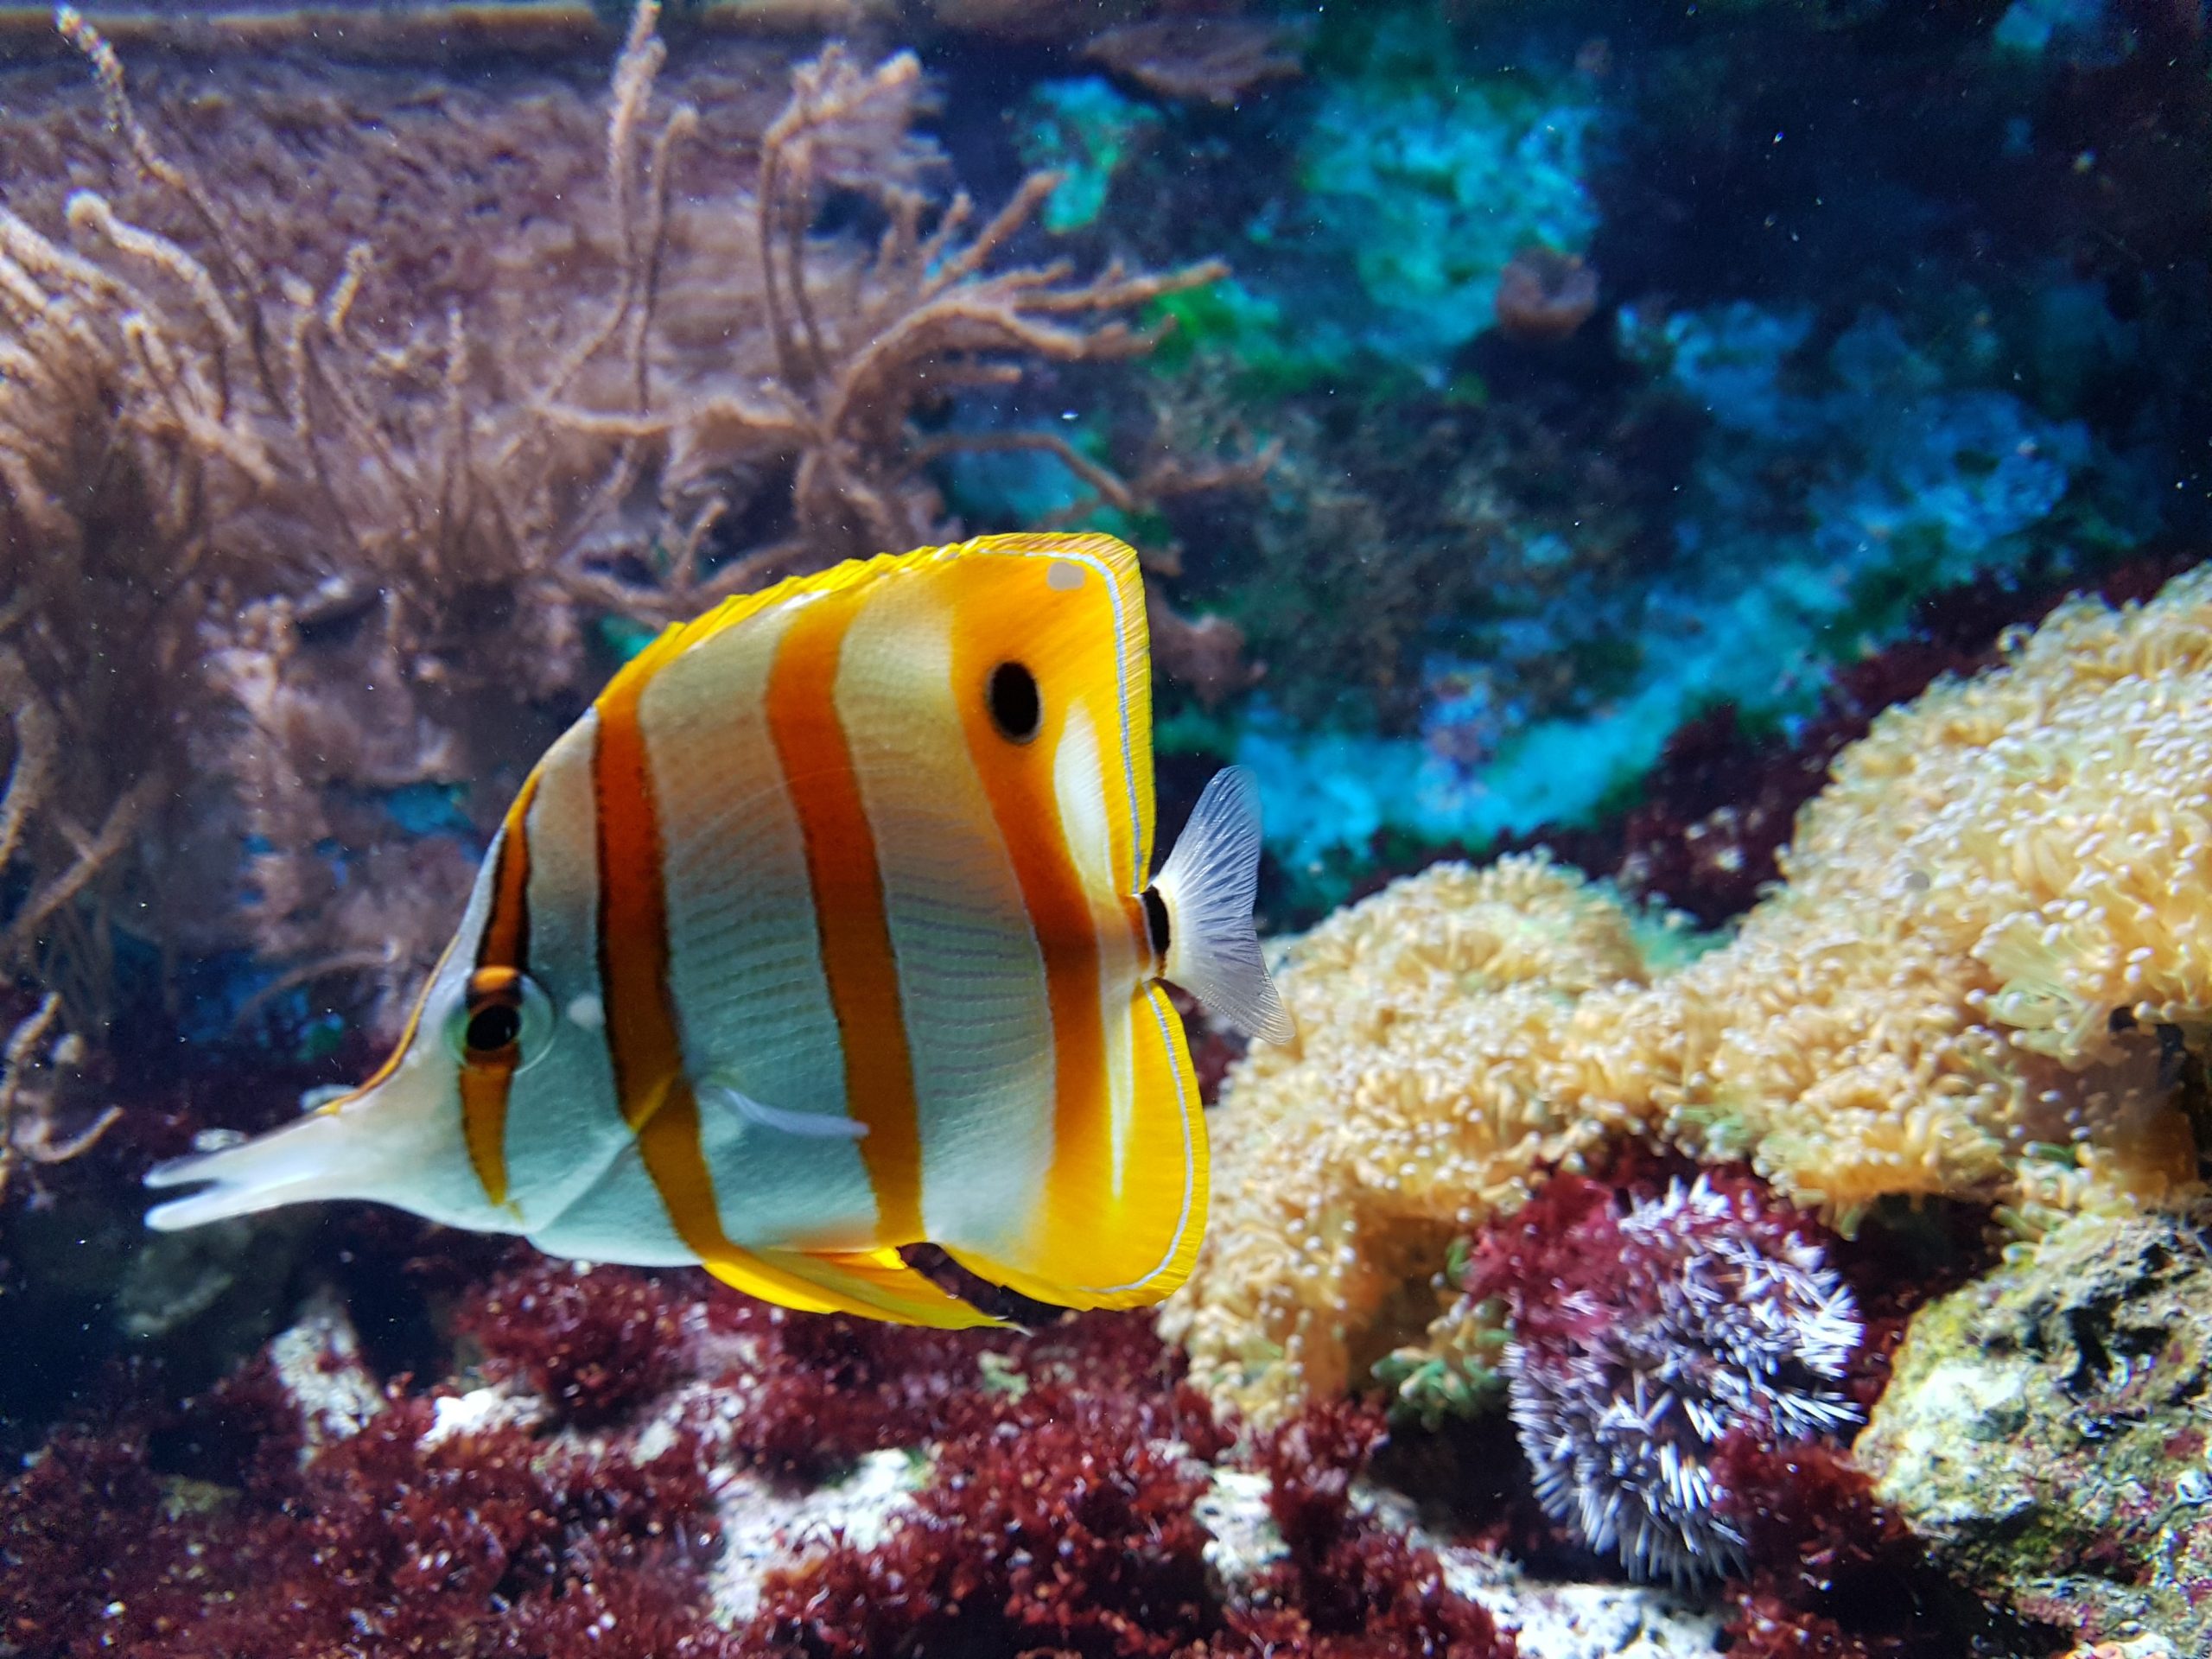 25 wichtige Fragen zu Soil Aquarium